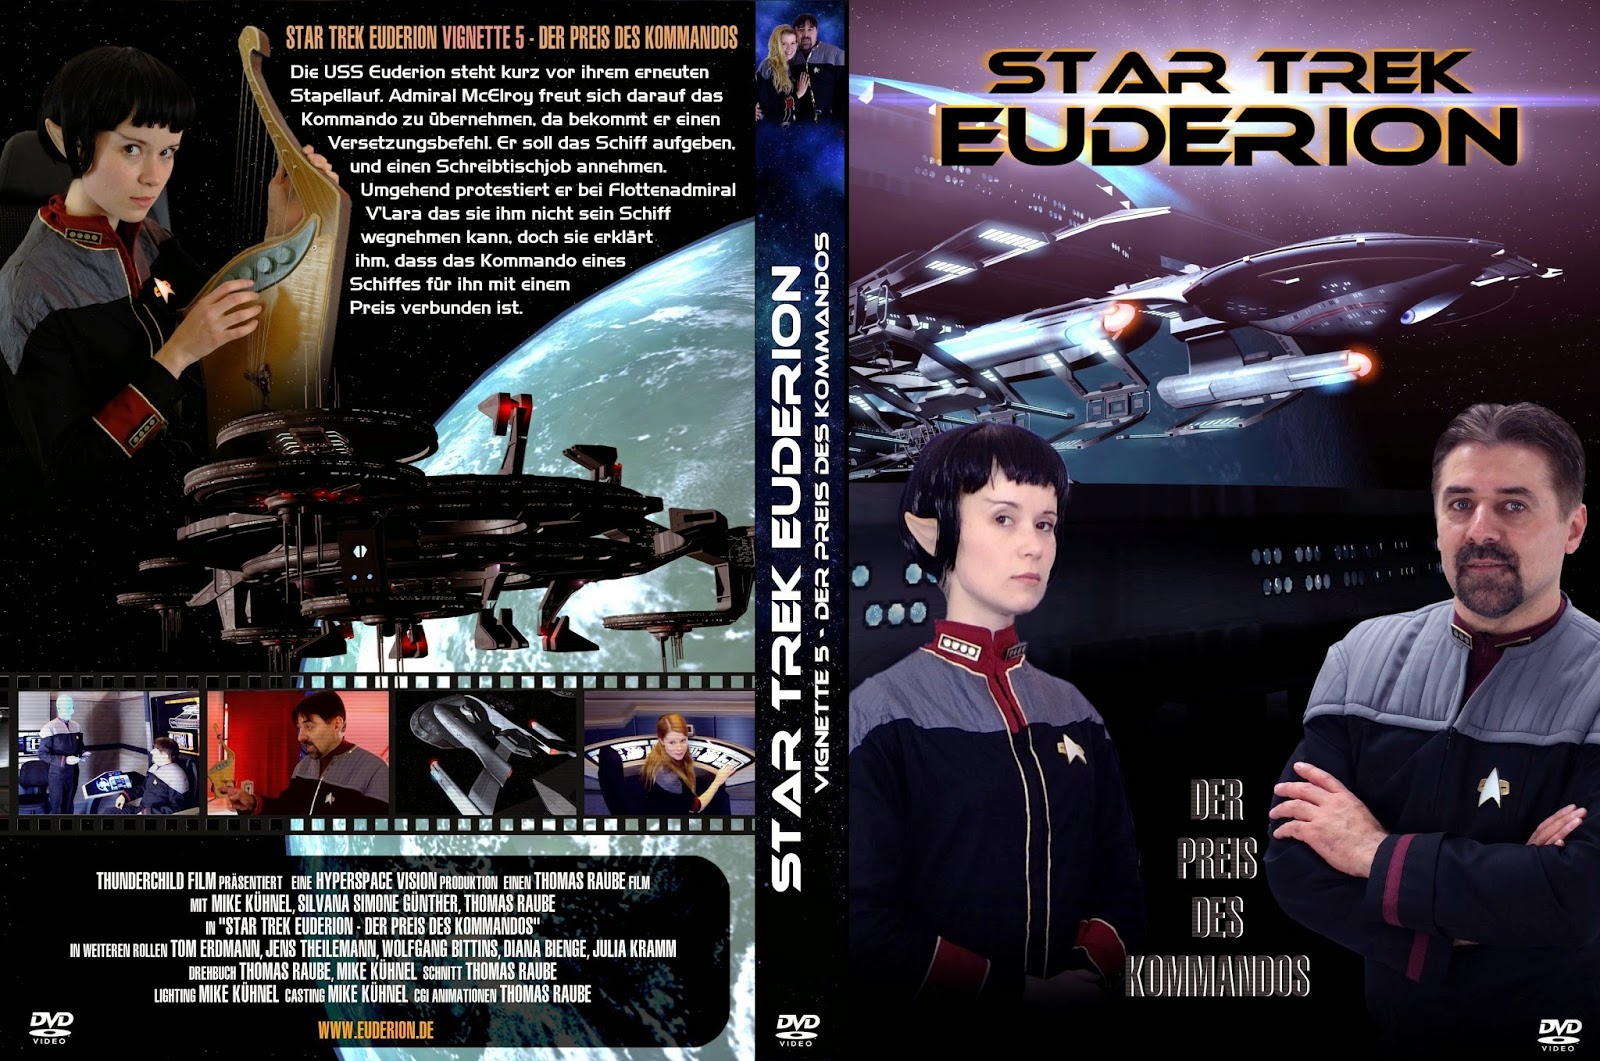 Star Trek: Euderion